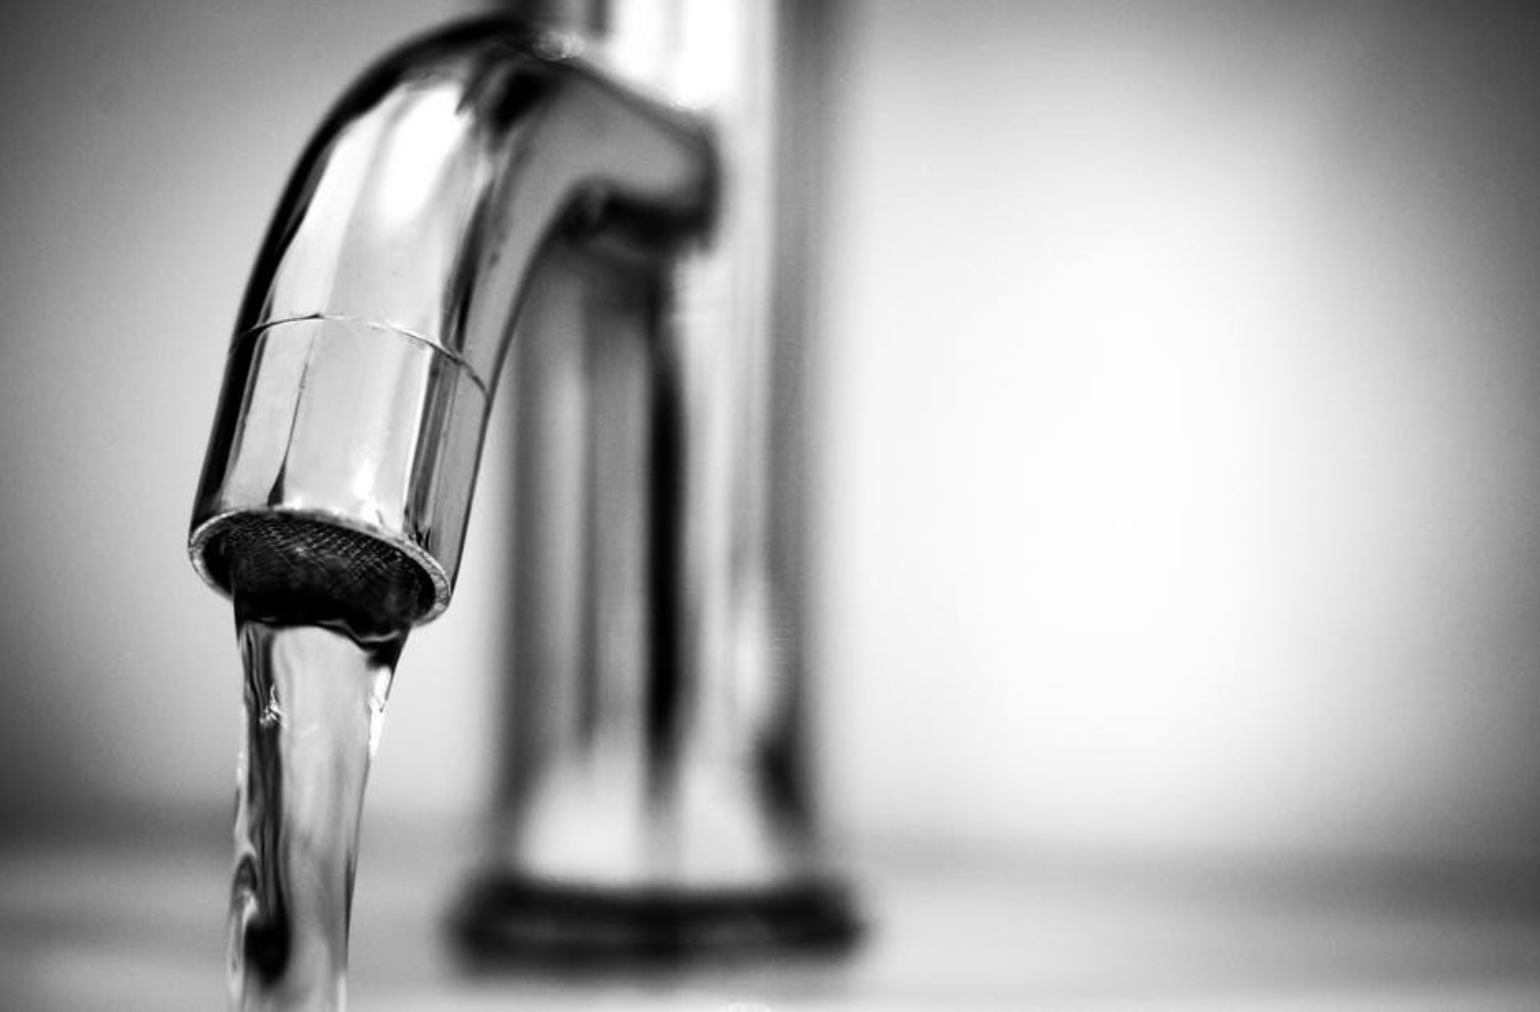 Low water pressure faucet